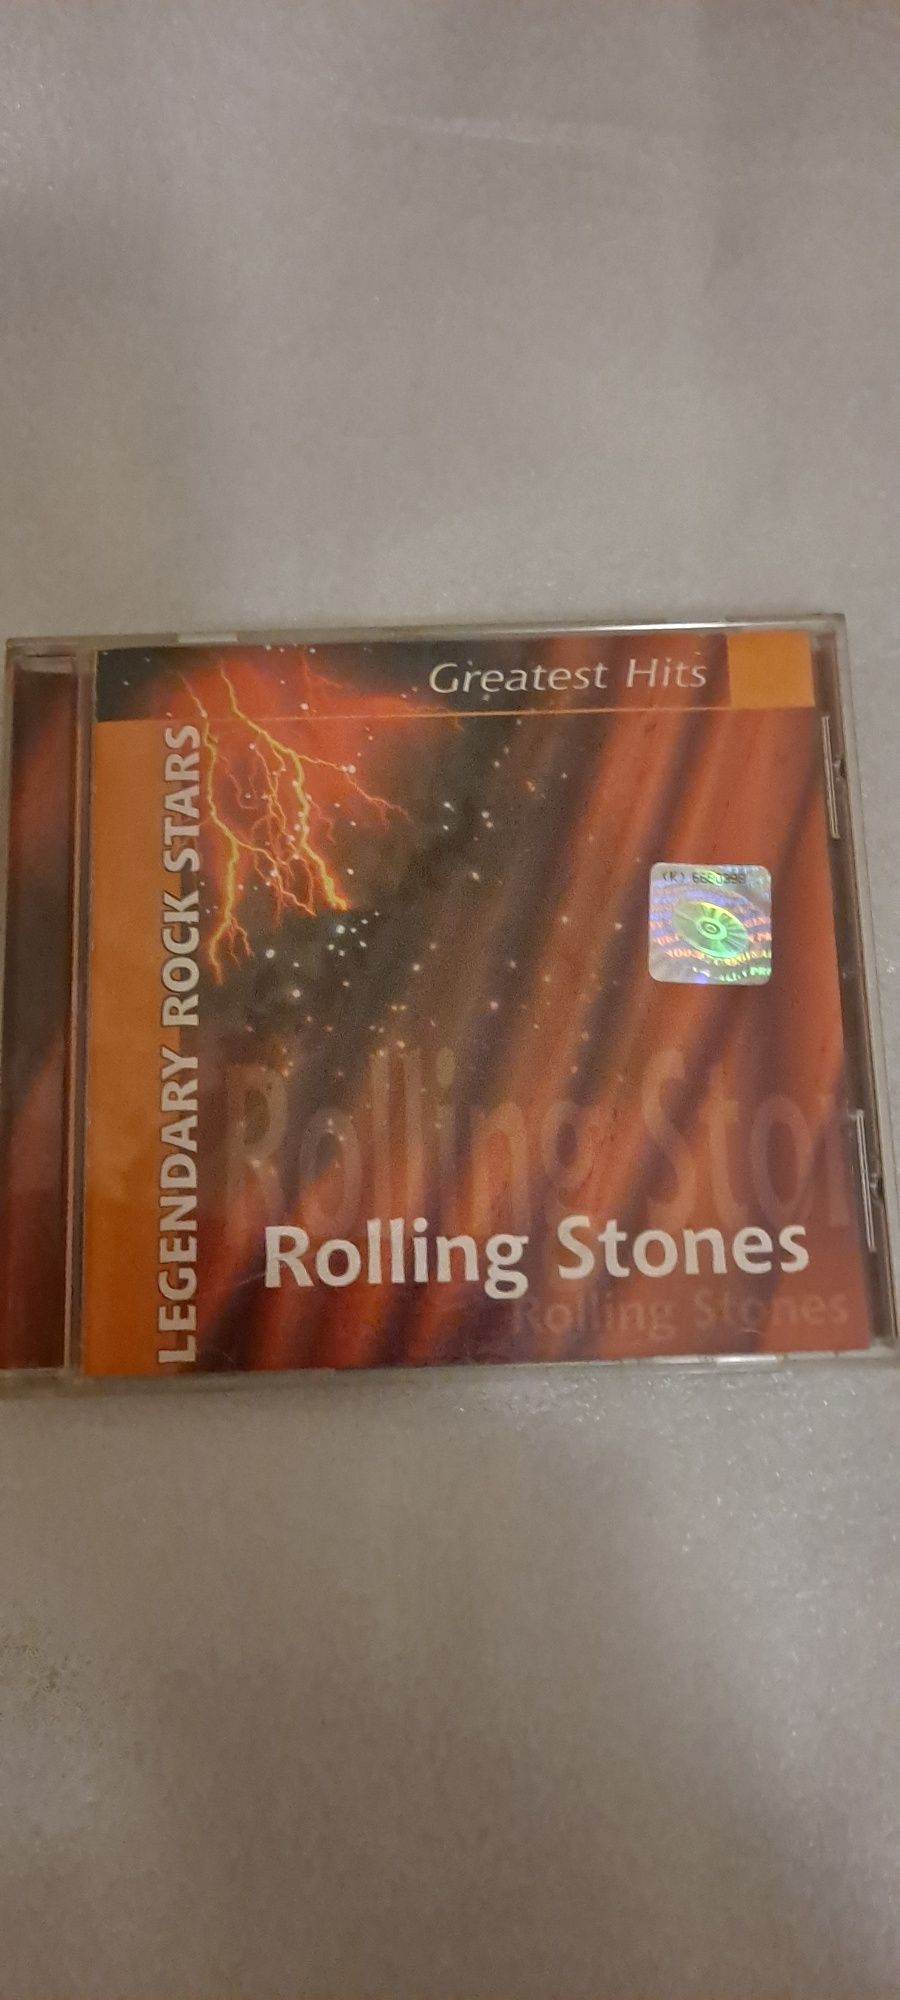 Płyta kompaktowa Rolling Stones